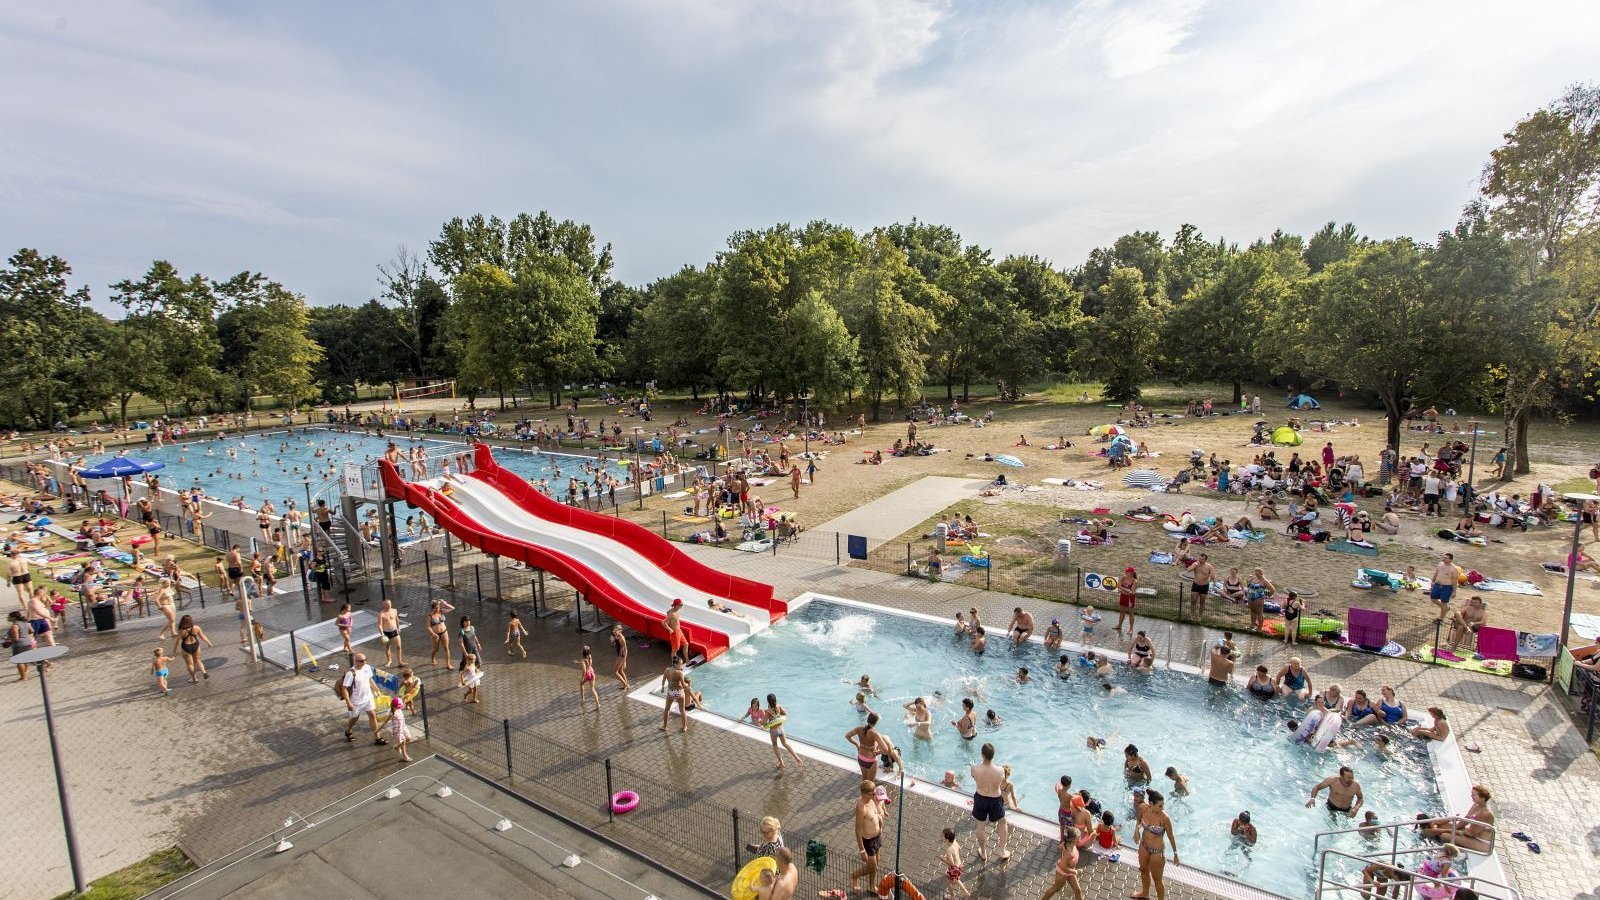 Zdjęcie przedstawia tłum ludzi na pływalni letniej, składającej się z dwóch basenów i zjeżdżalni.